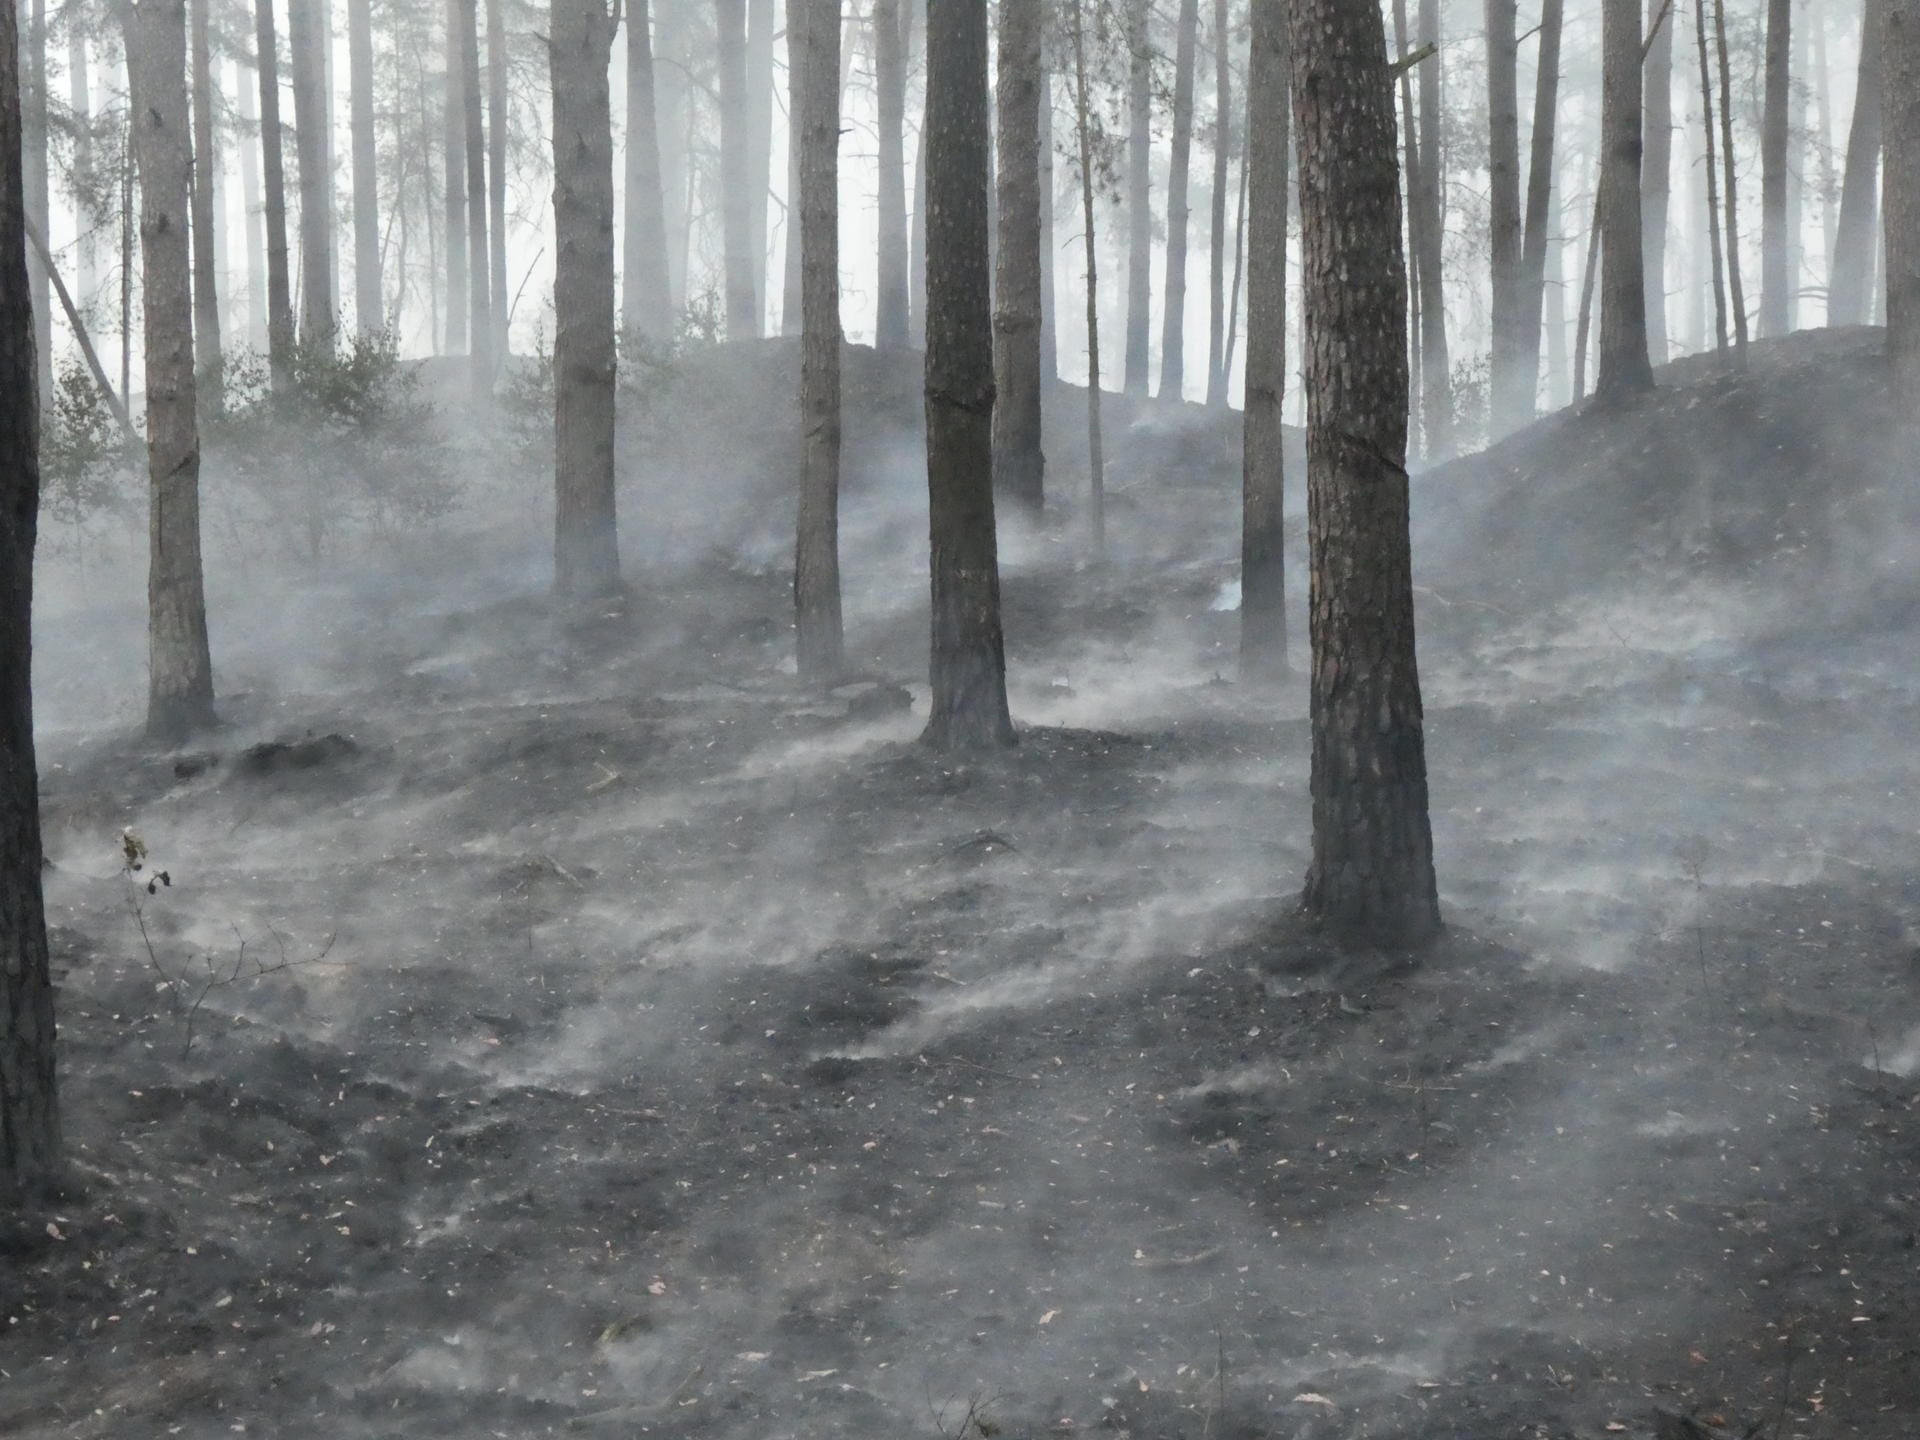 Hier brennt ein Wald: Die trockenen Nadeln am Boden tragen dazu bei, dass sich ein Brand schnell ausbreiten kann.